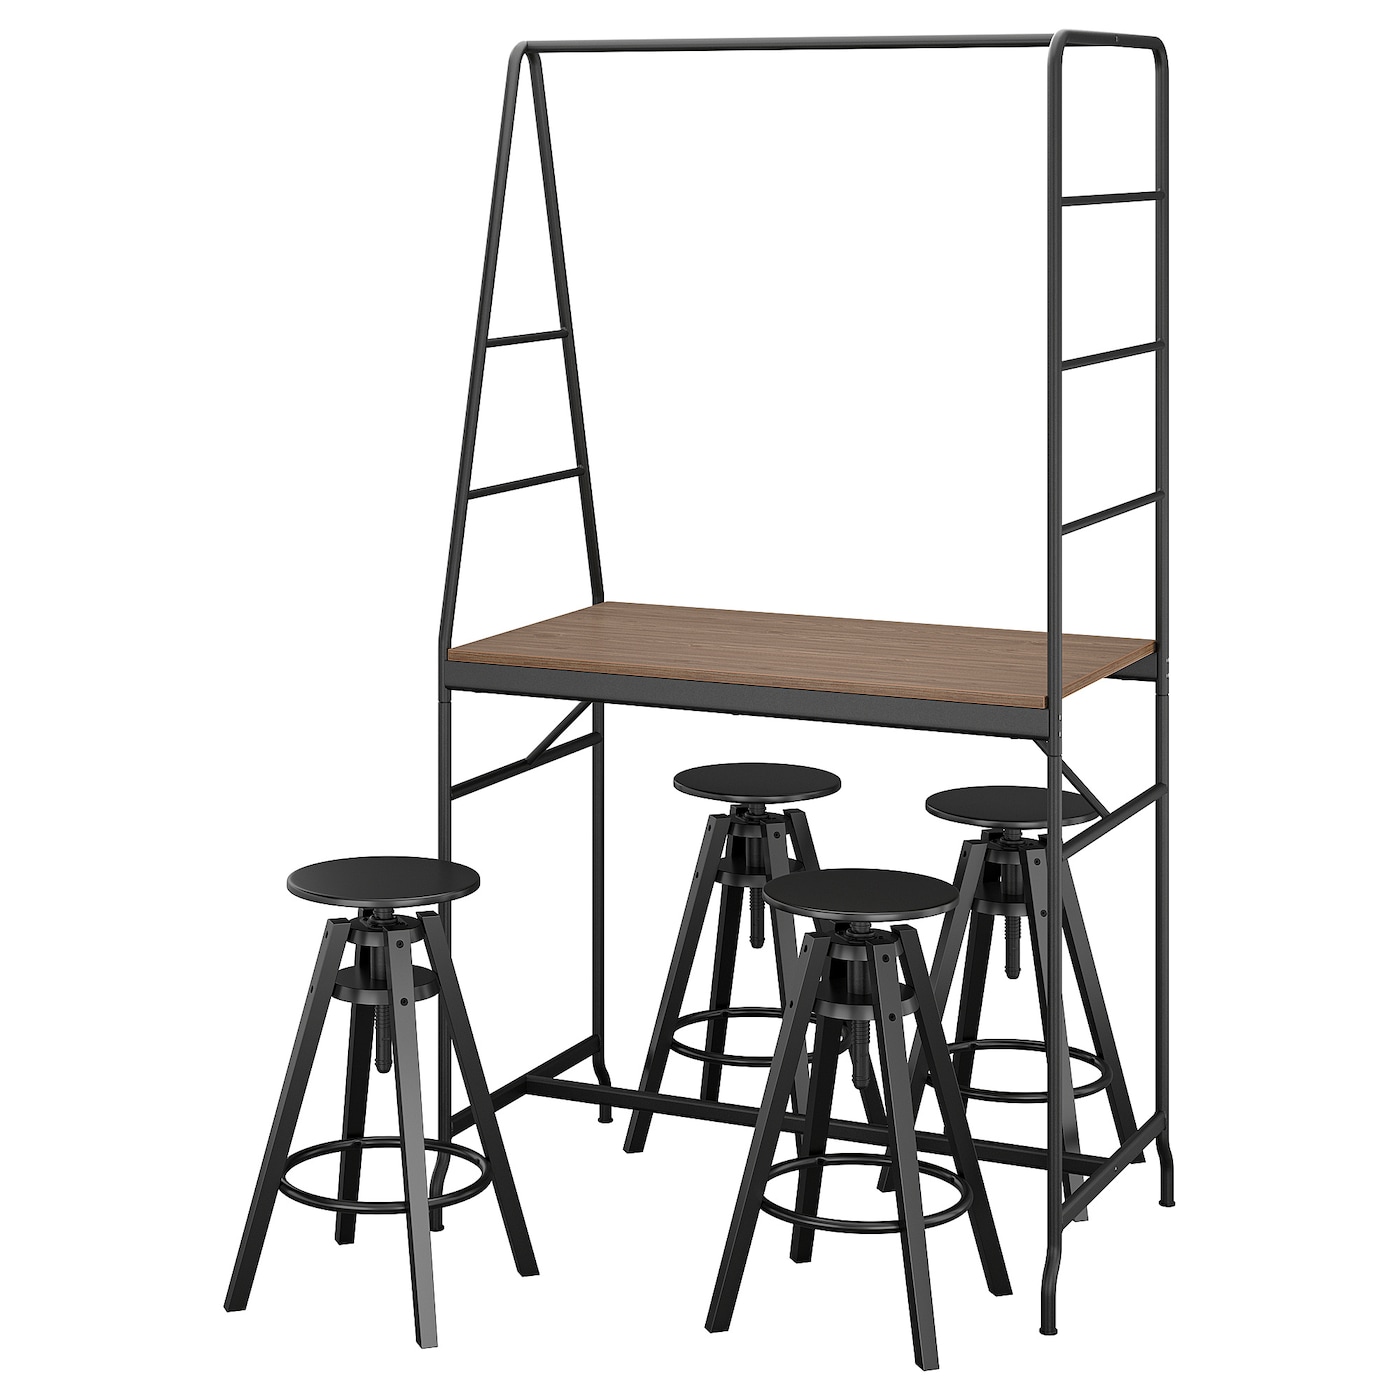 Комплект барного стола и барных стульев - HÅVERUD/HАVERUD/DALFRED IKEA, ХОВЕРЮД/ДАЛЬФРЕД ИКЕА, 192/93х105х66 см, серый